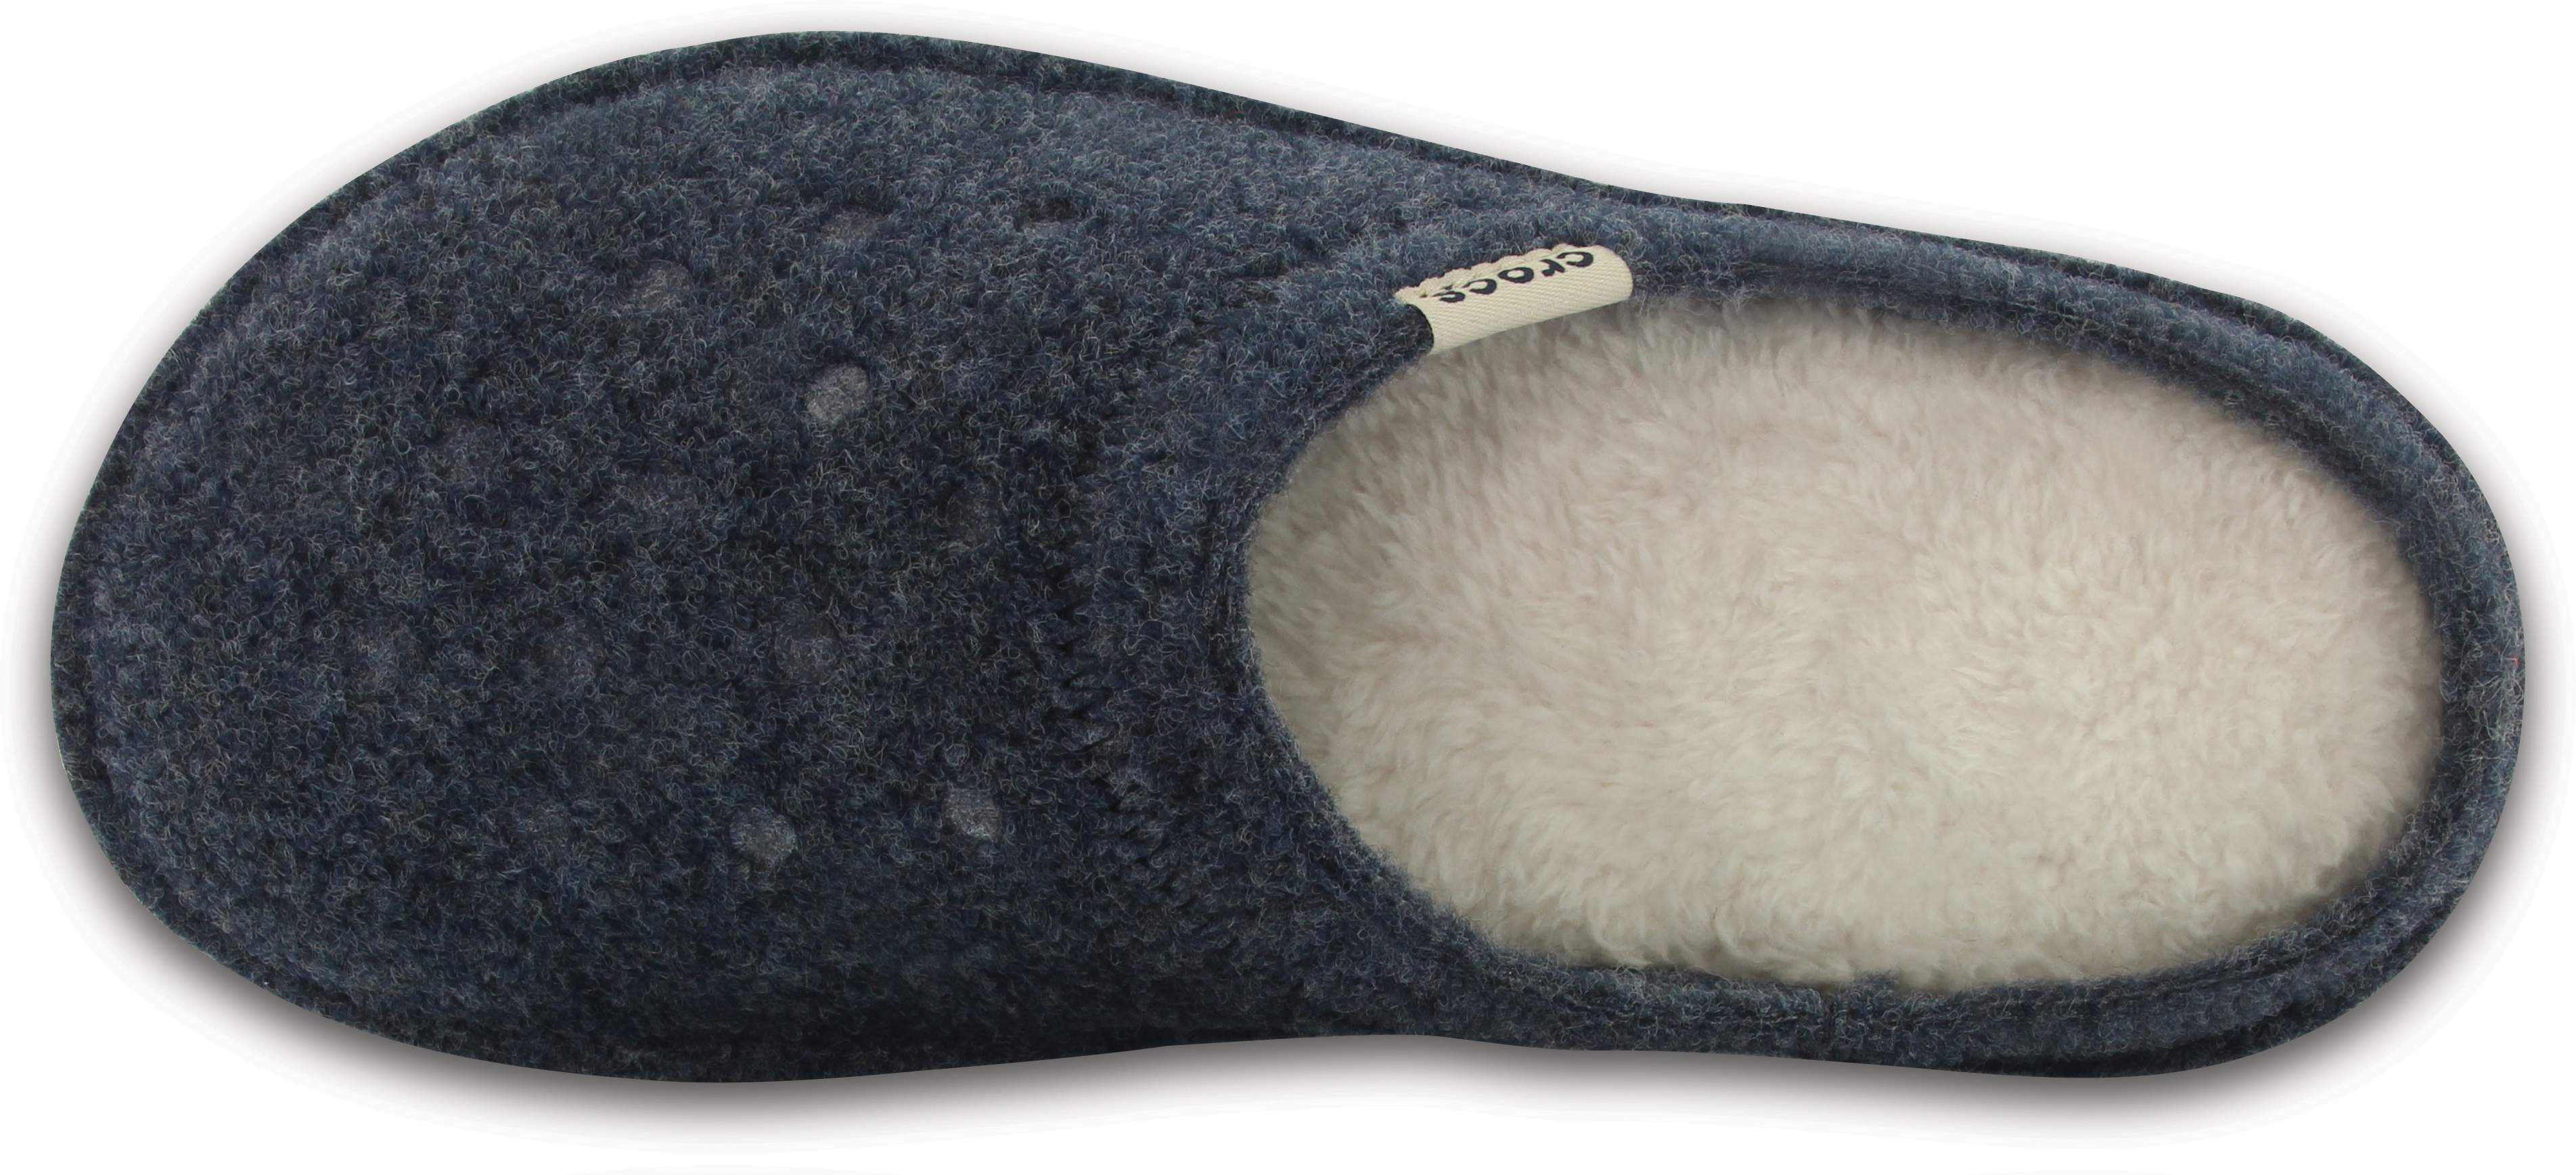 crocs classic lined slipper